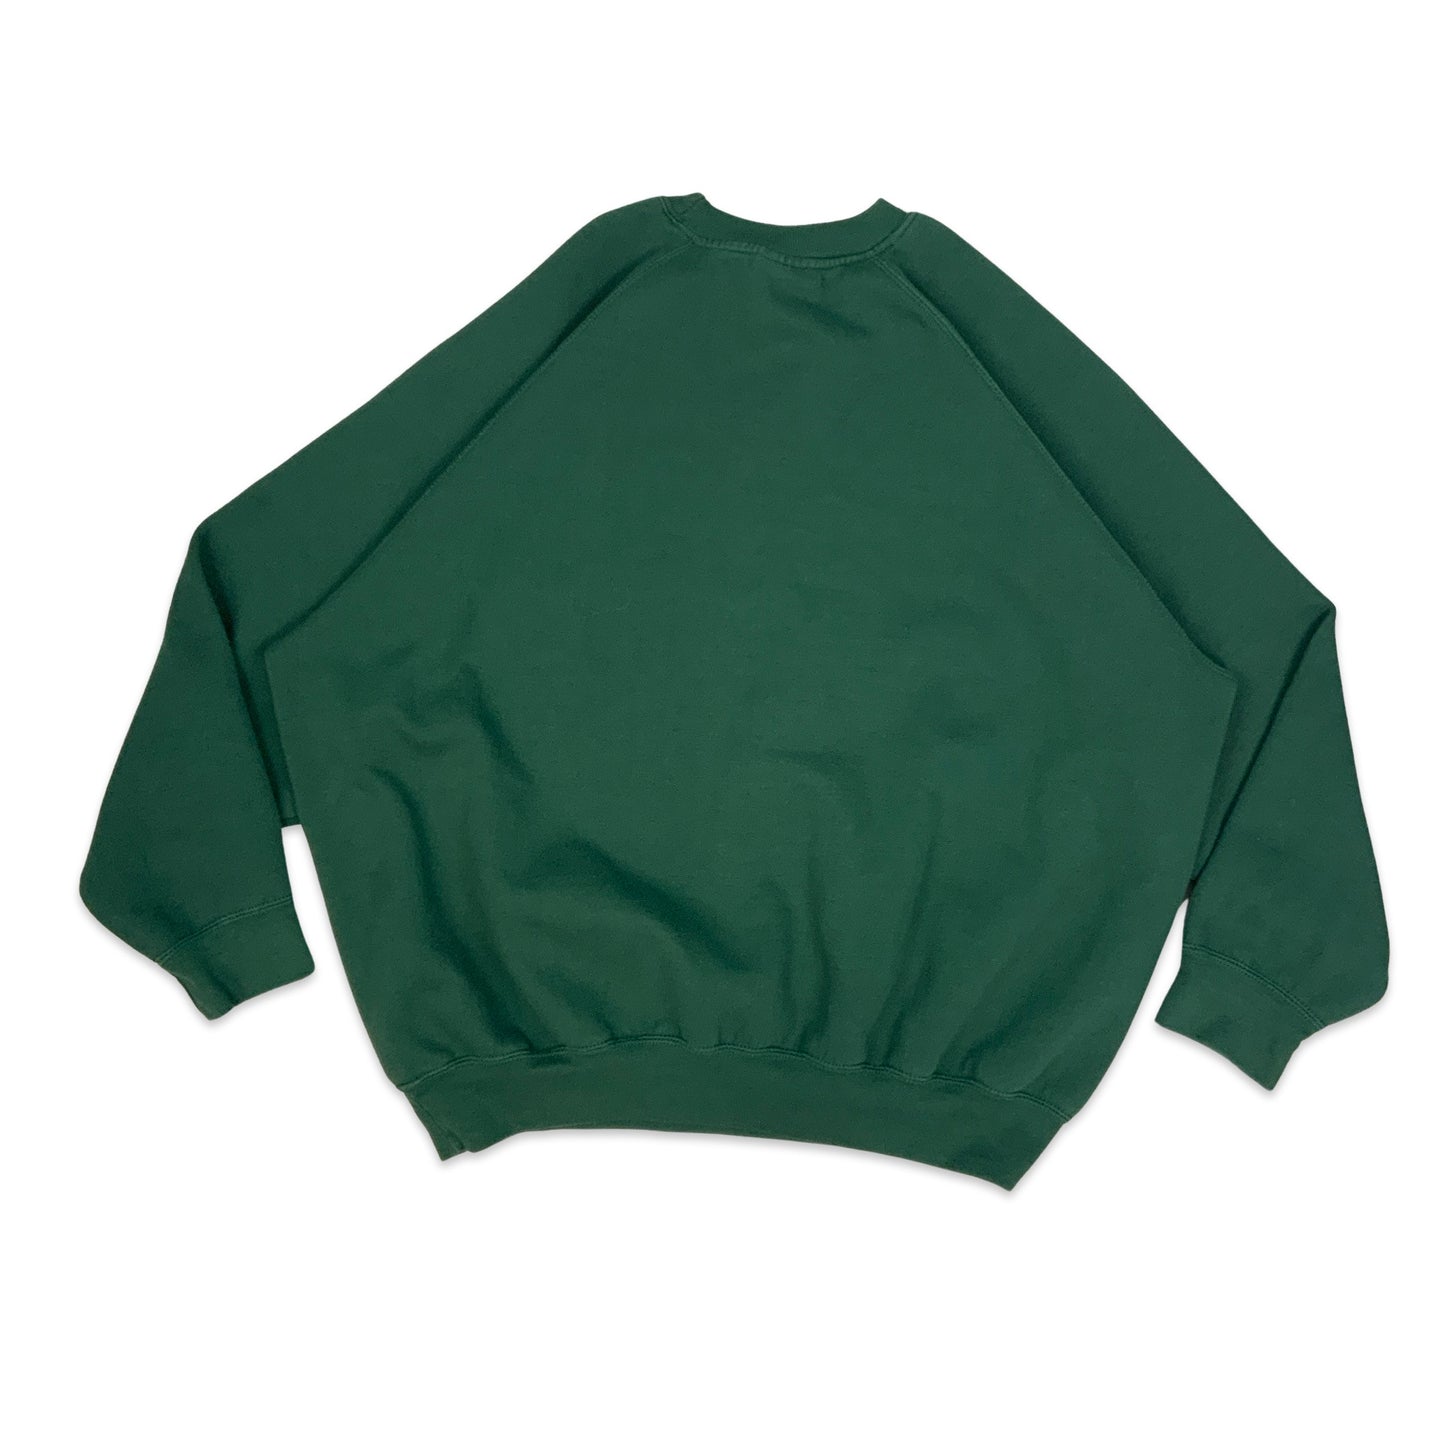 Russell Athletic Green Blank Sweatshirt 3XL 4XL